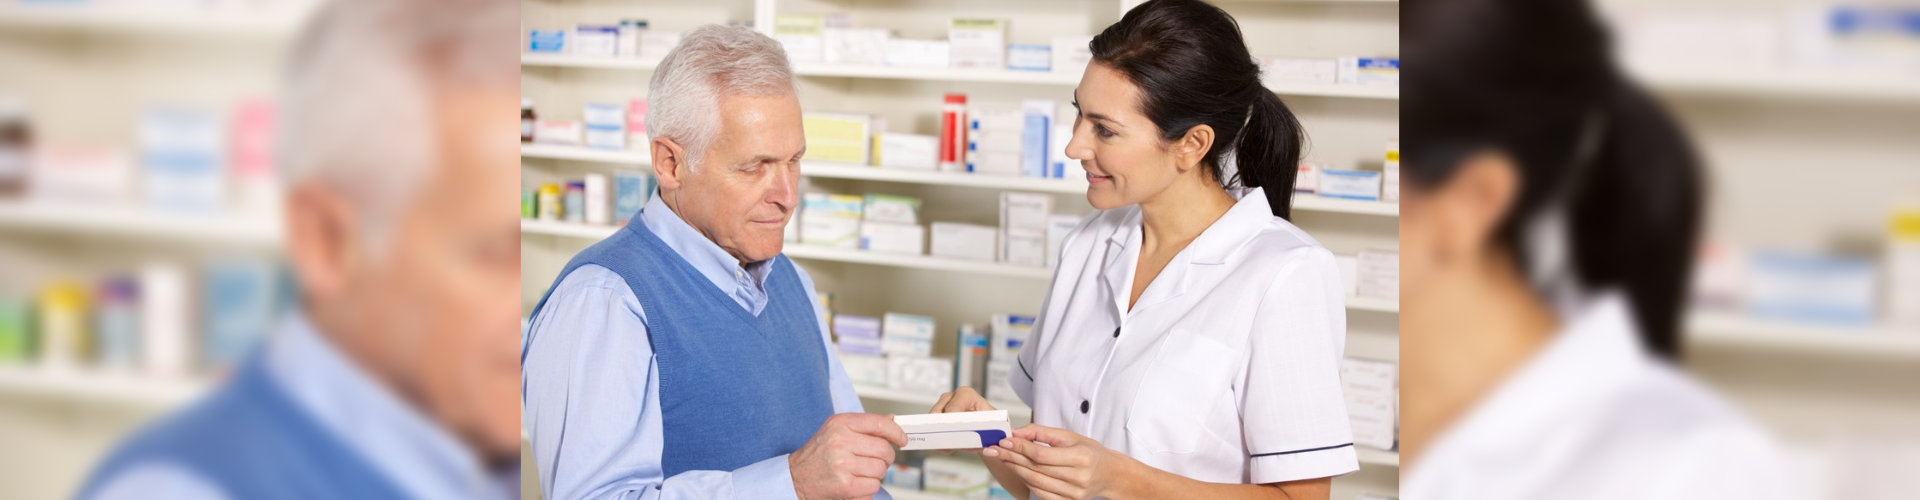 pharmacist serving senior man in pharmacy